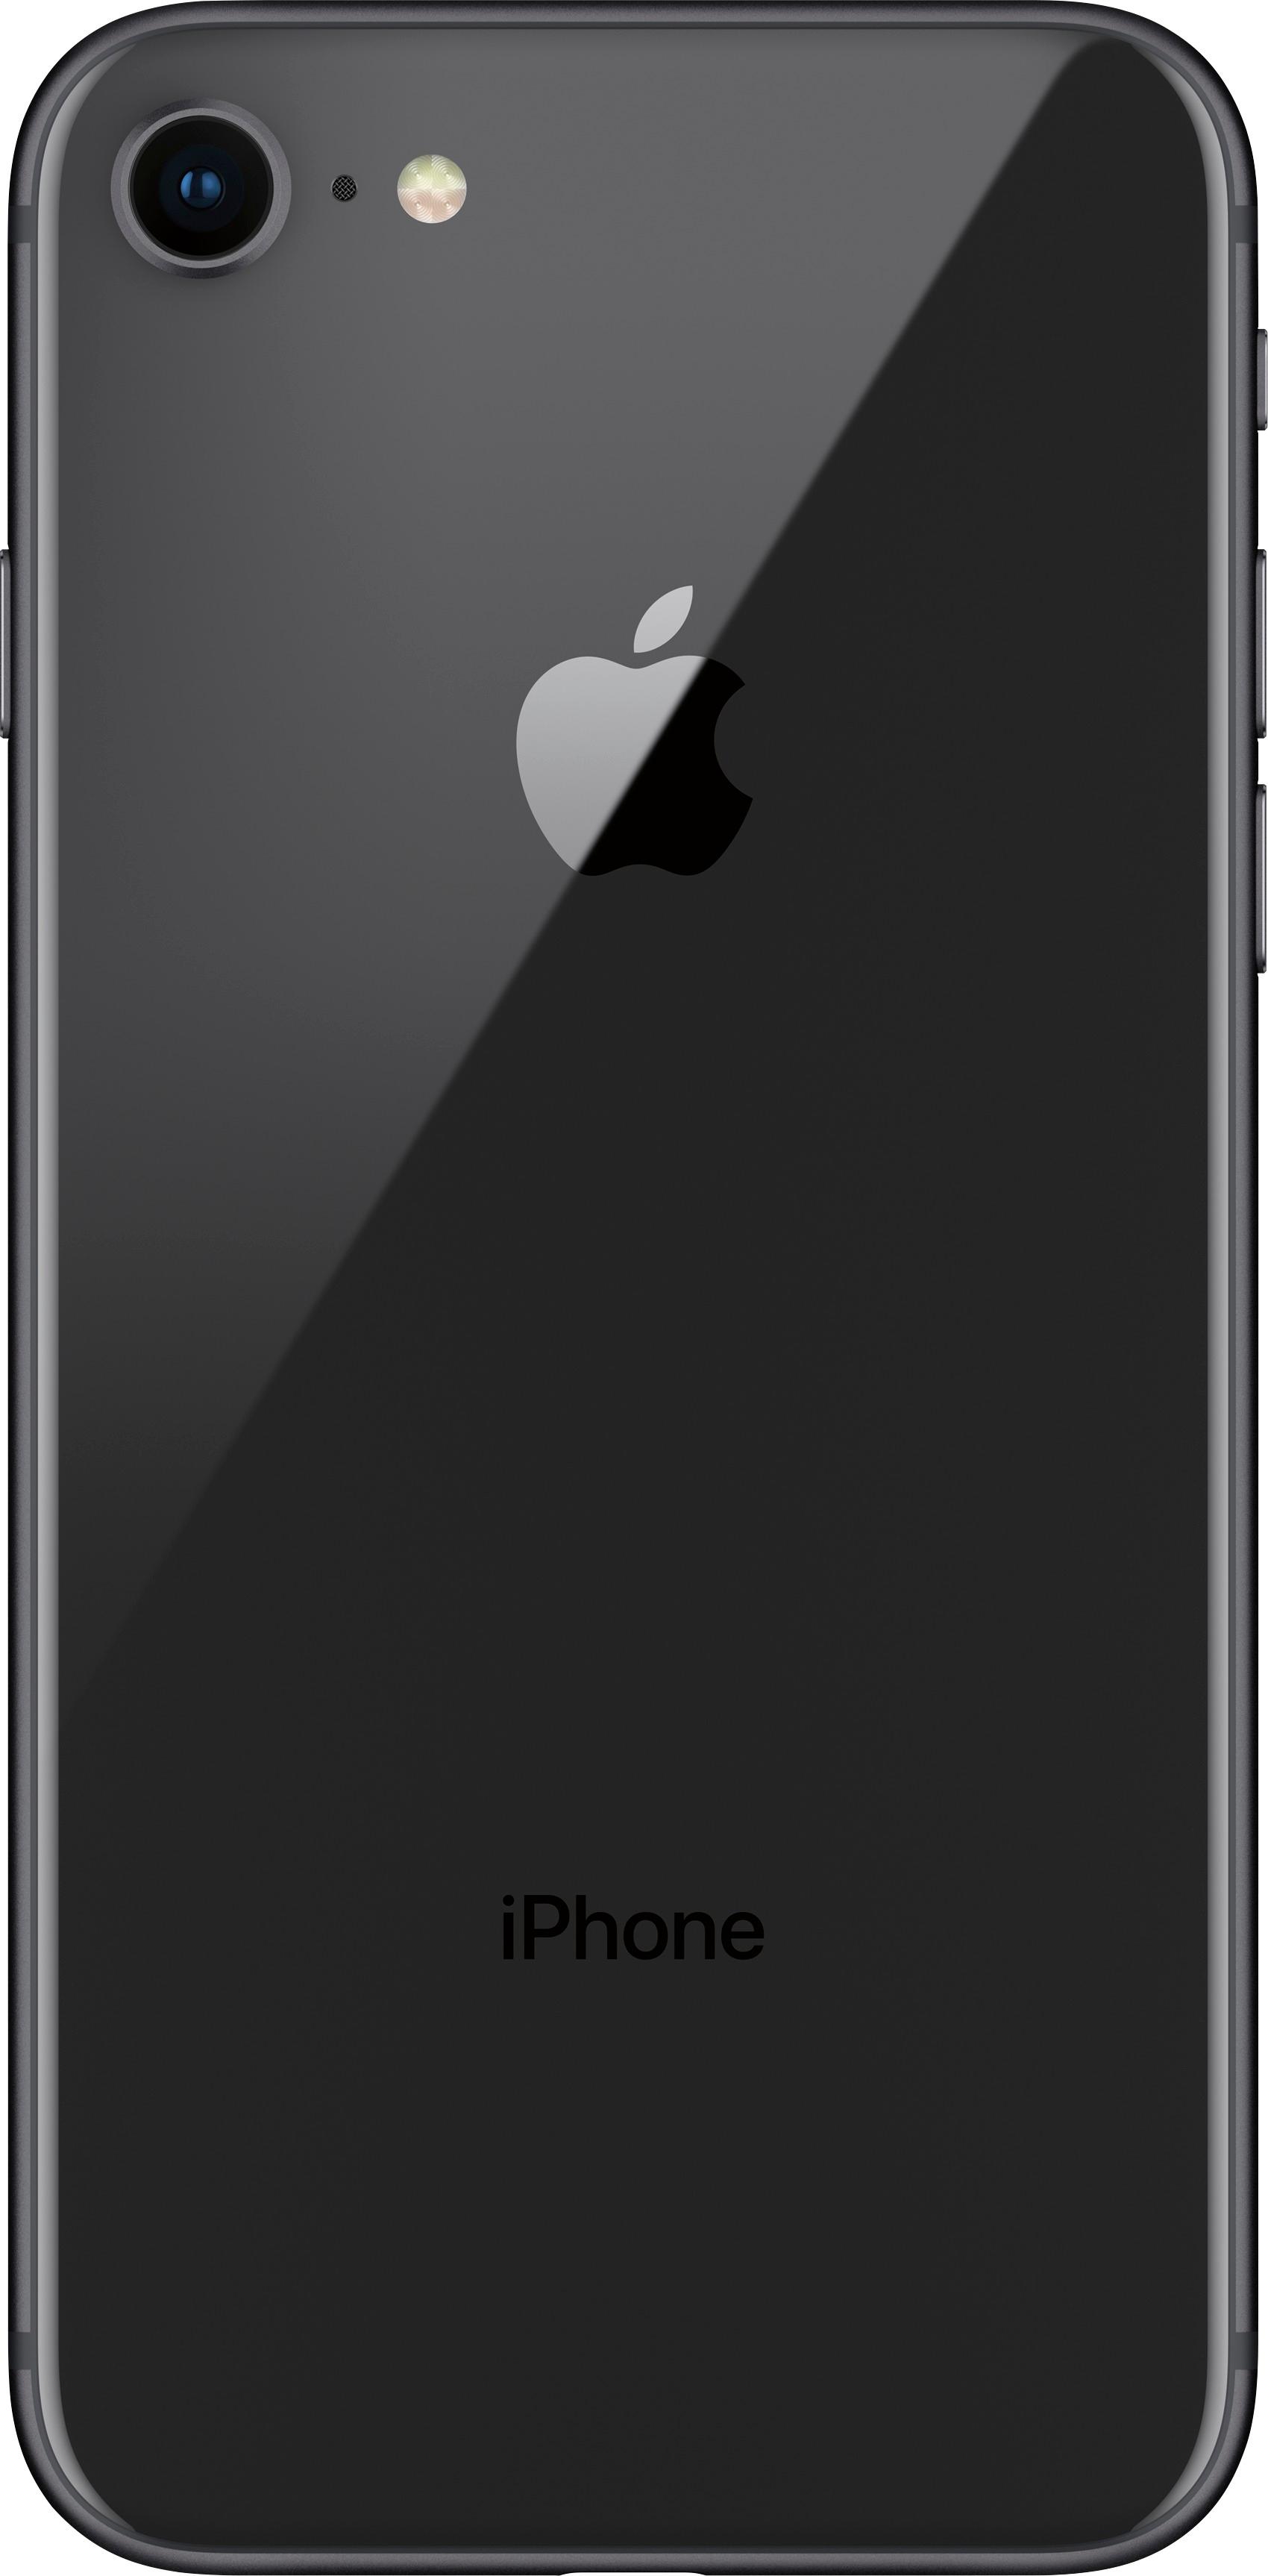 スマートフォン/携帯電話 スマートフォン本体 Best Buy: Apple iPhone 8 64GB Space Gray (AT&T) MQ6K2LL/A